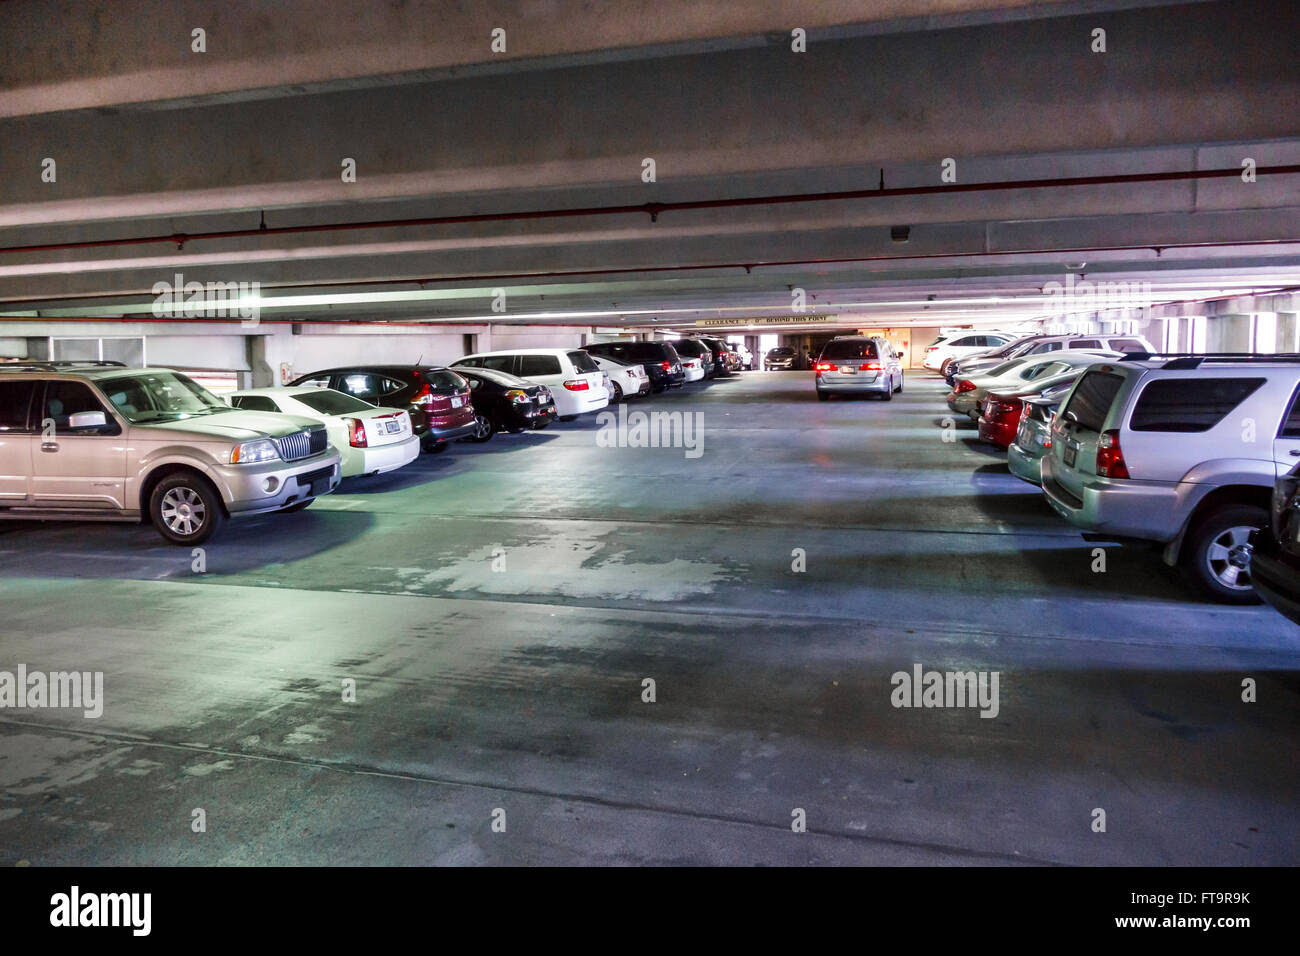 Florida FL Miami Coral Gables public parking garage car park inside